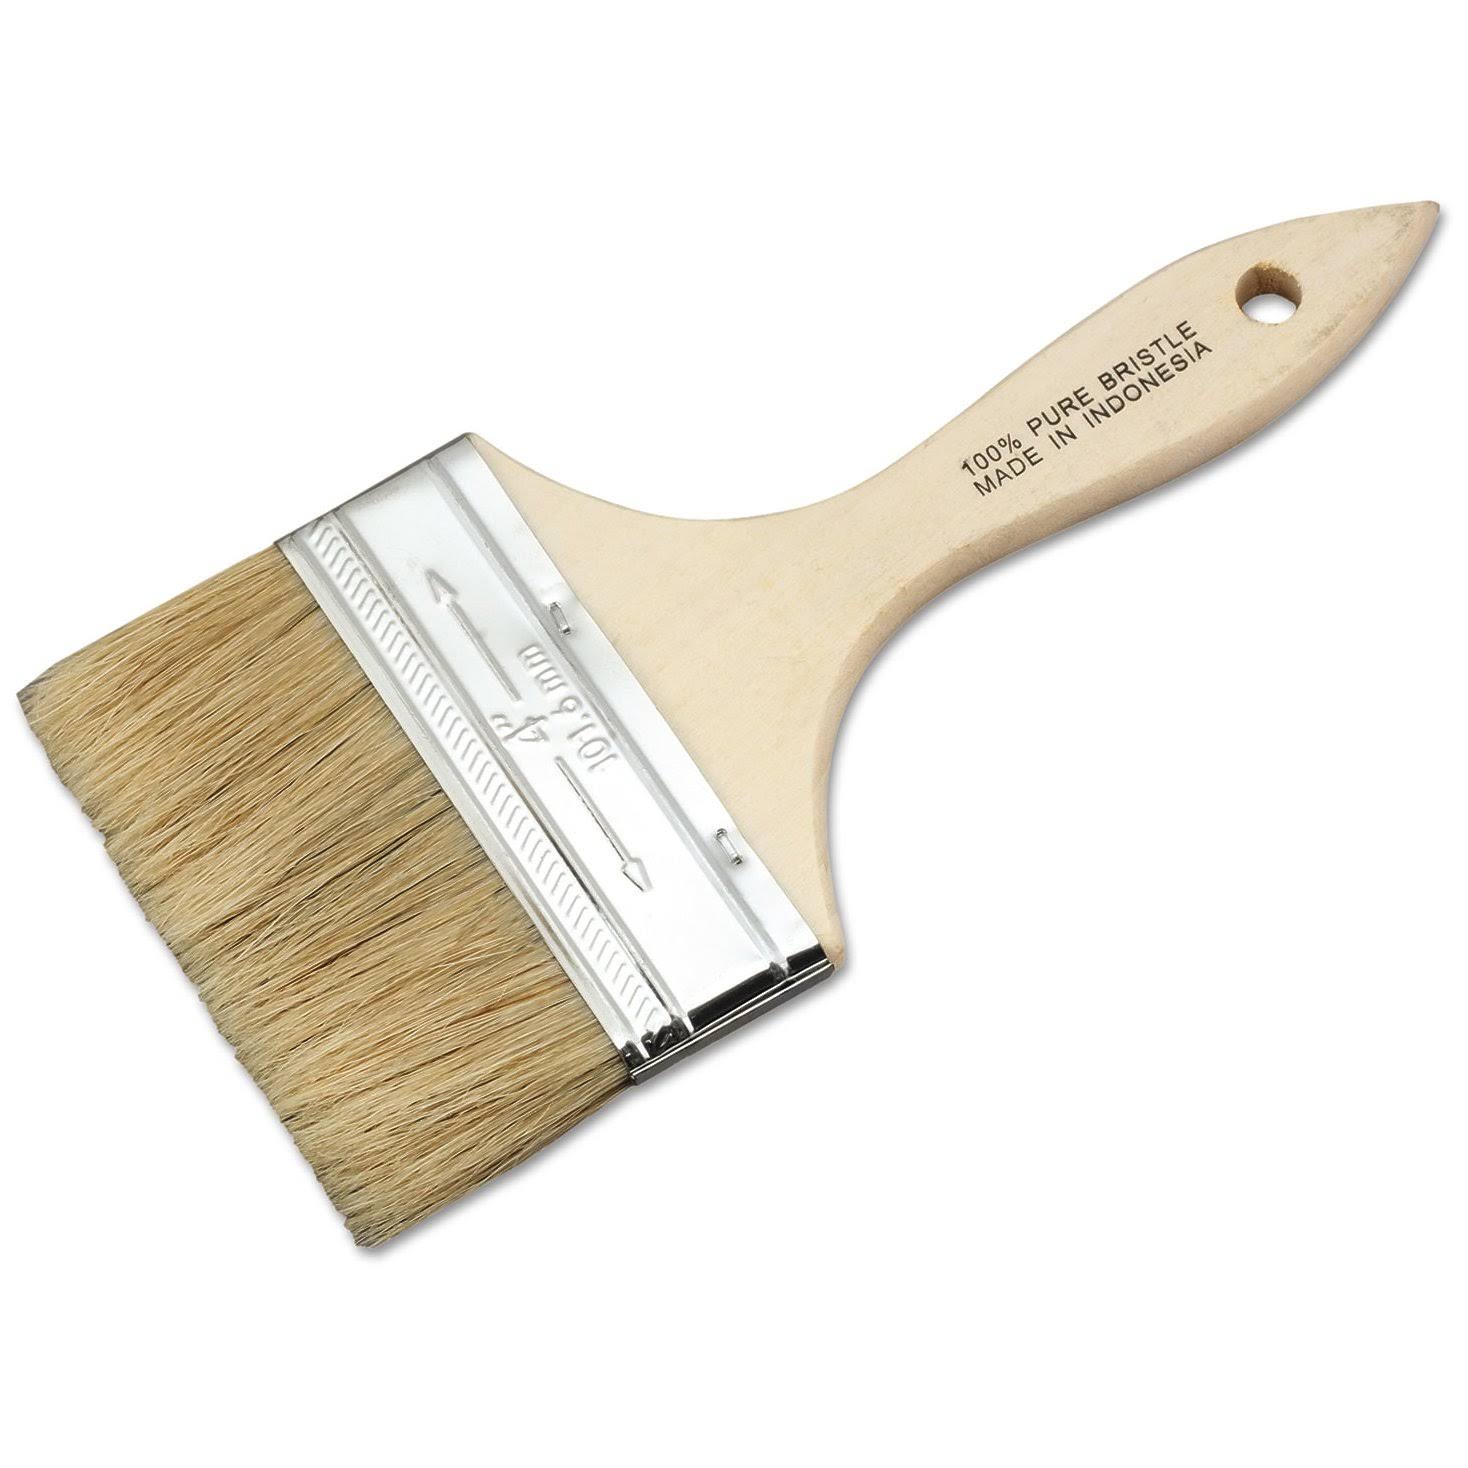 Magnolia 236S Low Cost Paint Brush - 4"